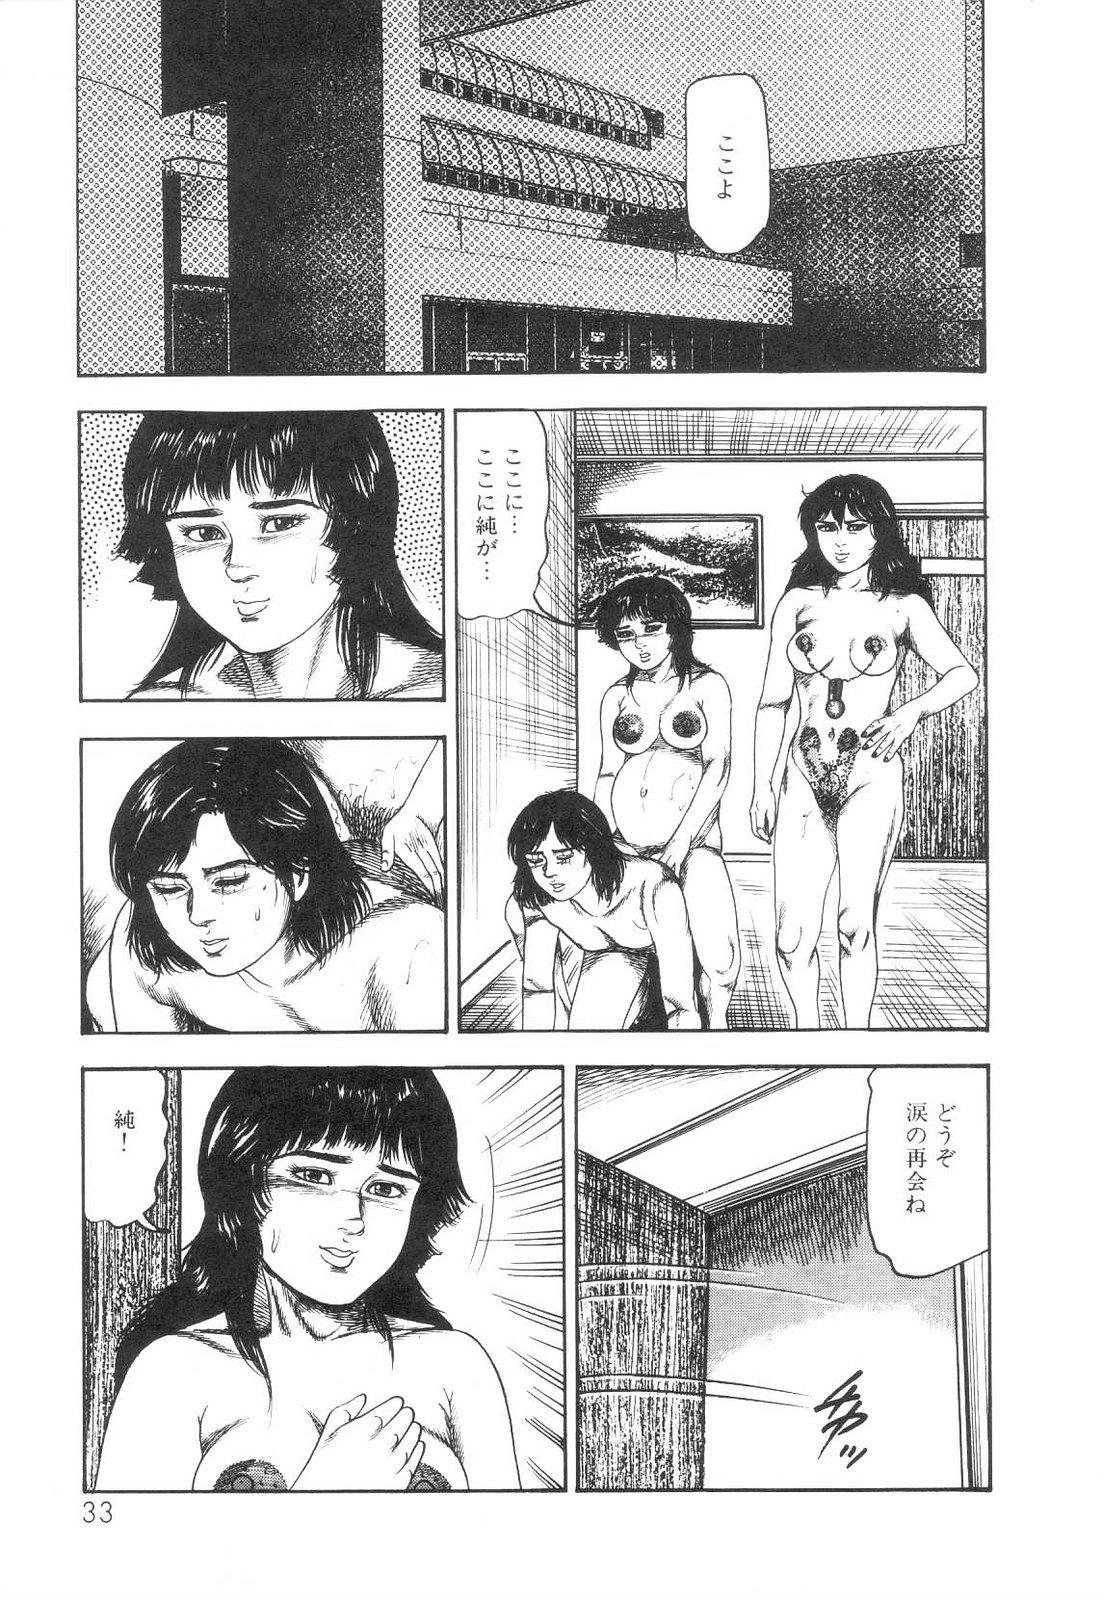 Shiro no Mokushiroku Vol. 6 - Juuai Erika no Shou 34